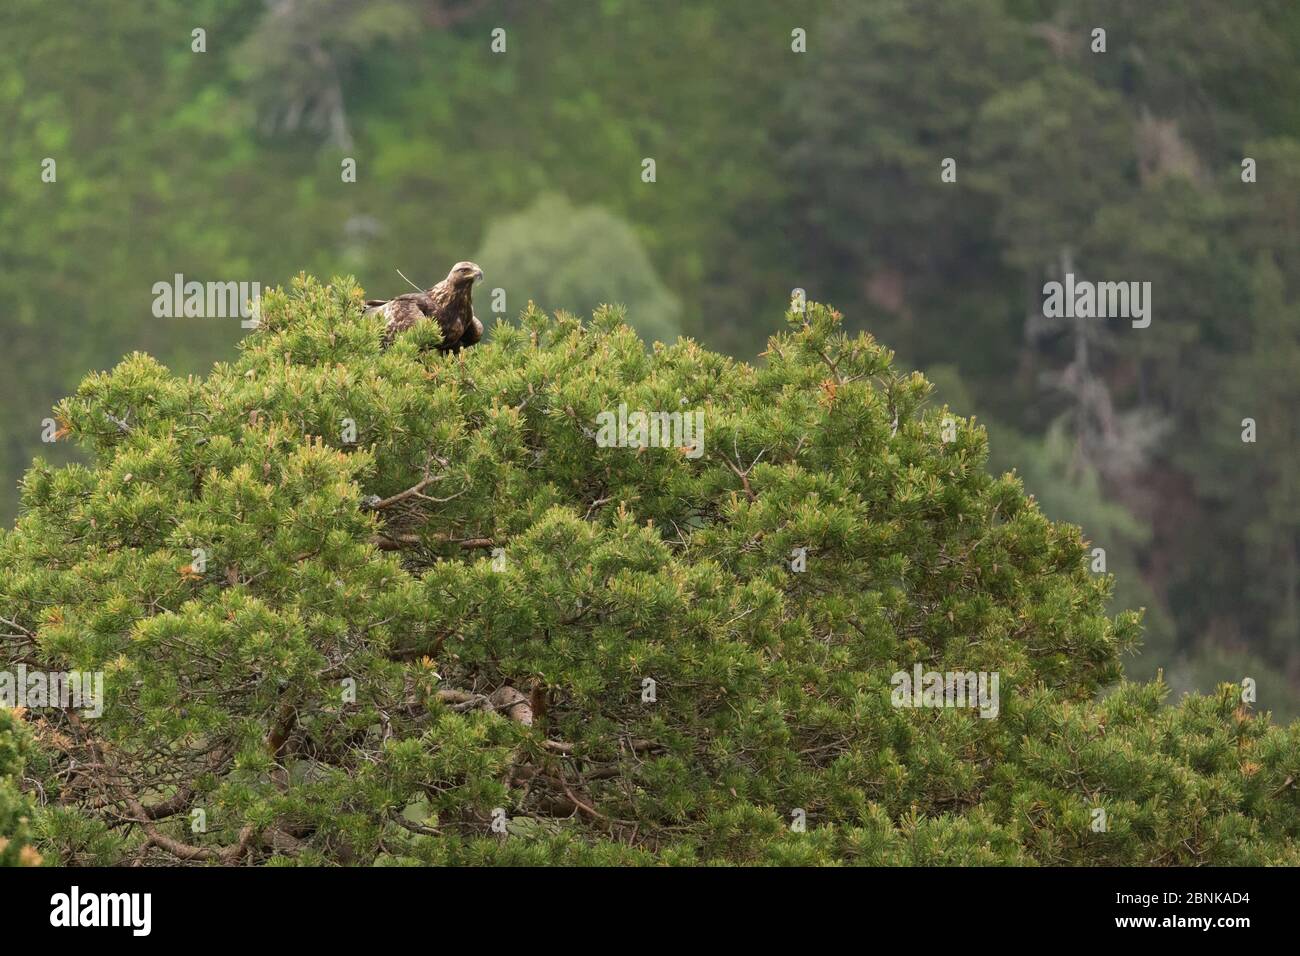 Steinadler (Aquila chrysaetos) Männchen mit Funksender Tracking-Gerät auf der Spitze der Kiefer, Schottland ausgestattet Stockfoto